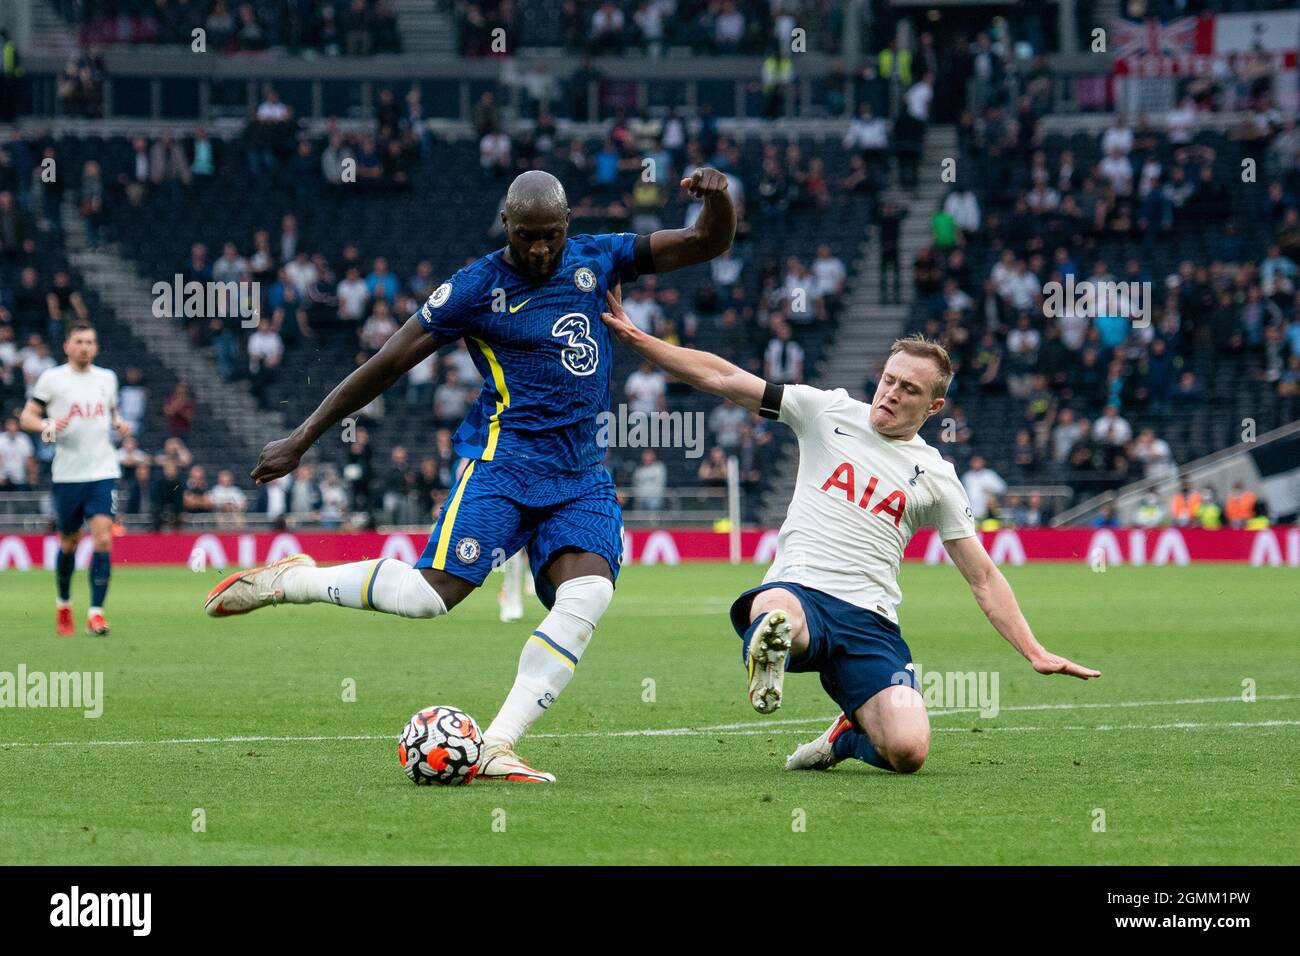 Romelu Lukaku de Chelsea et Skipp de Spurs lors du match de la Premier League entre Tottenham Hotspur et Chelsea au stade Tottenham Hotspur en septembre Banque D'Images